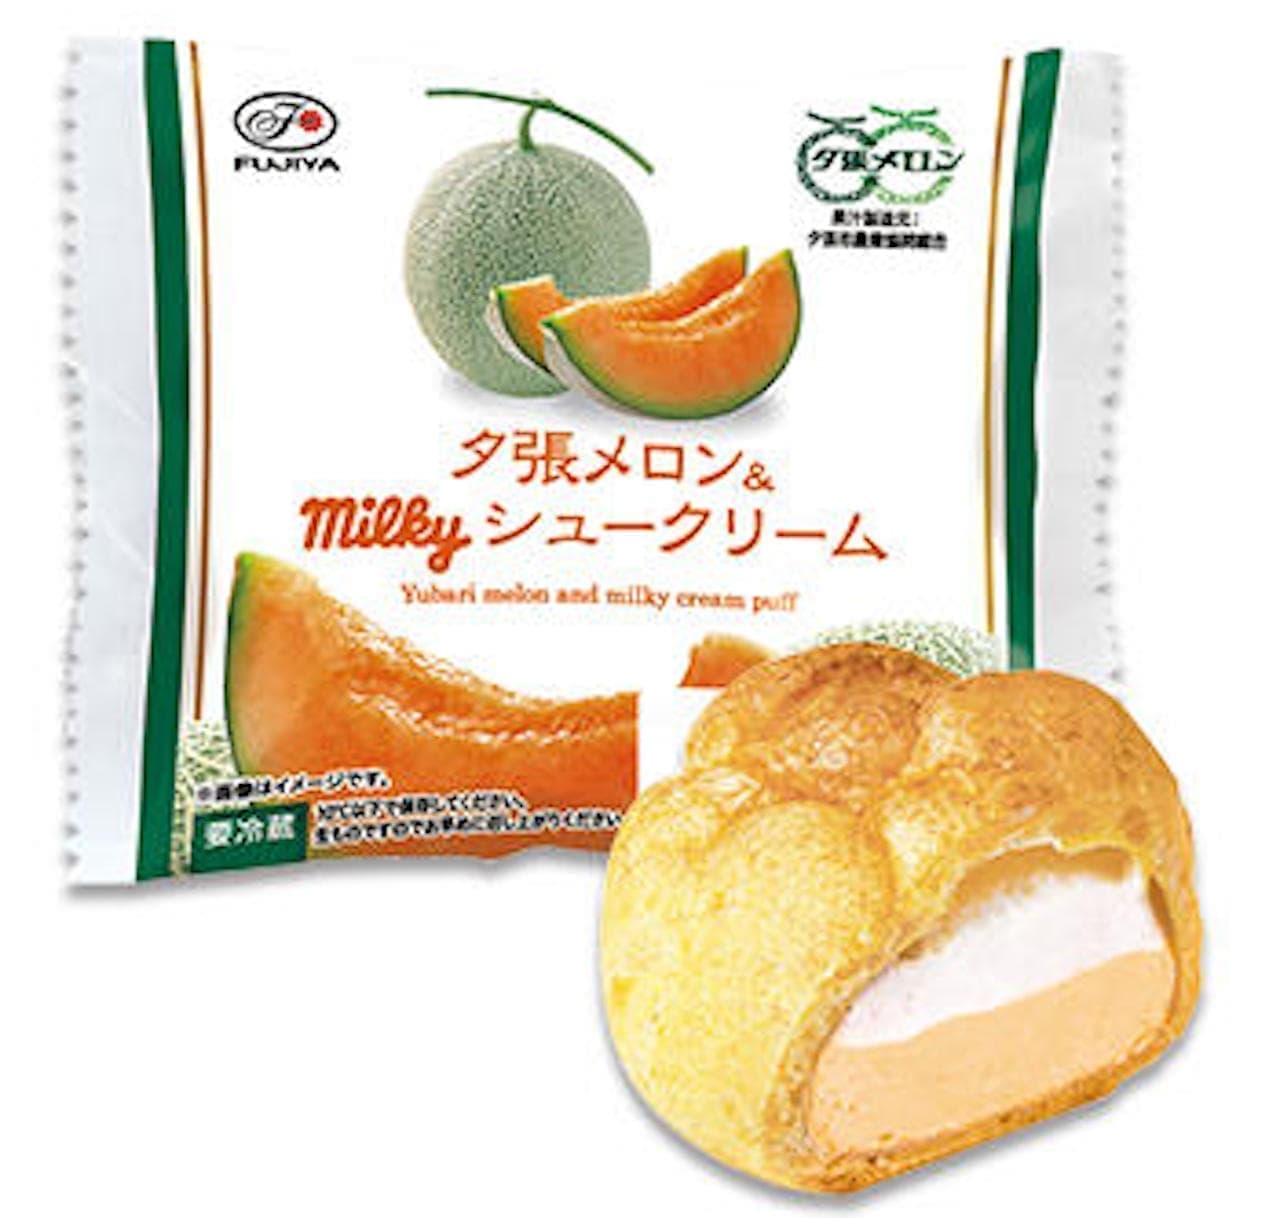 Fujiya "Yubari Melon & Milky Cream Puff"